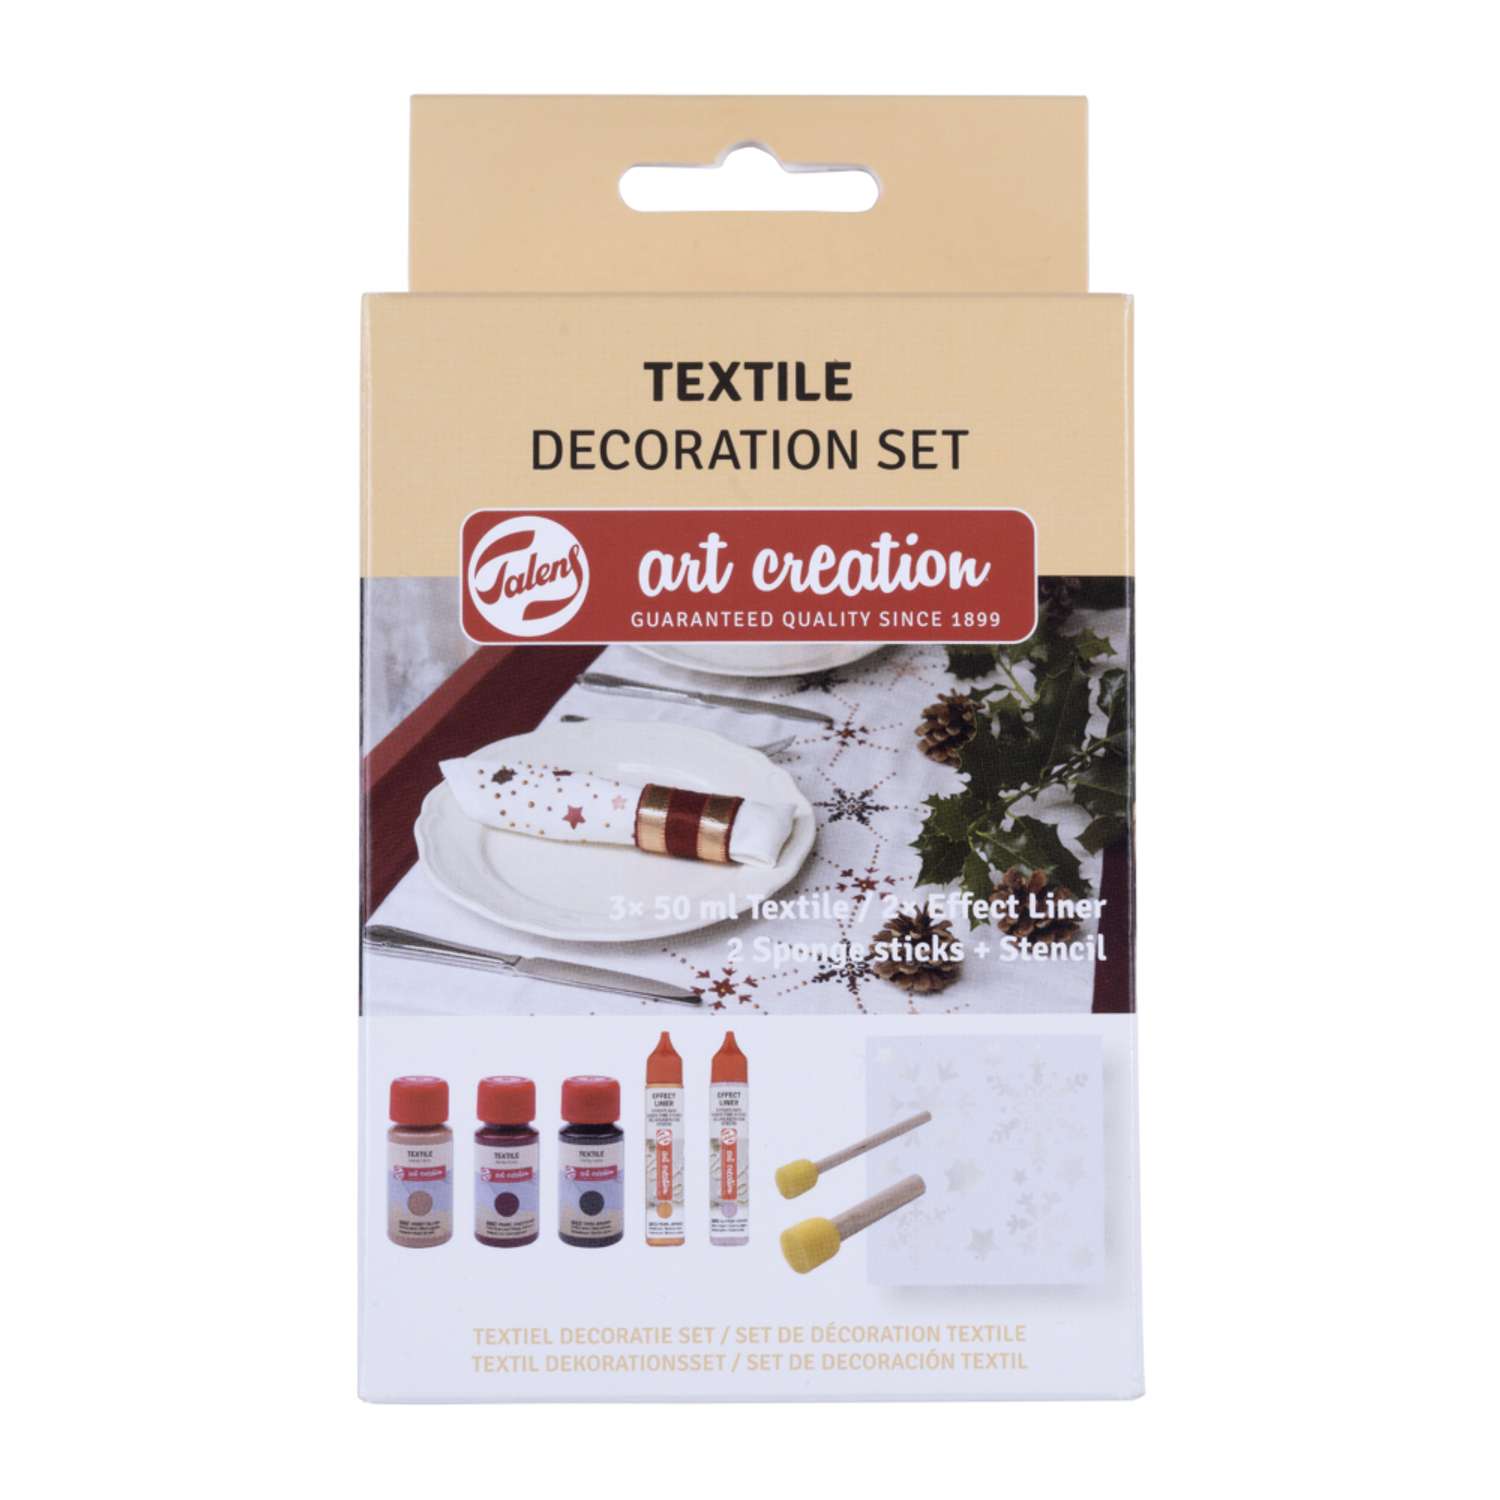 Набор красок для текстиля Talens Art Creation Textile 5 цветов трафарет и губки-спонжи в картонной упаковке - фото 1